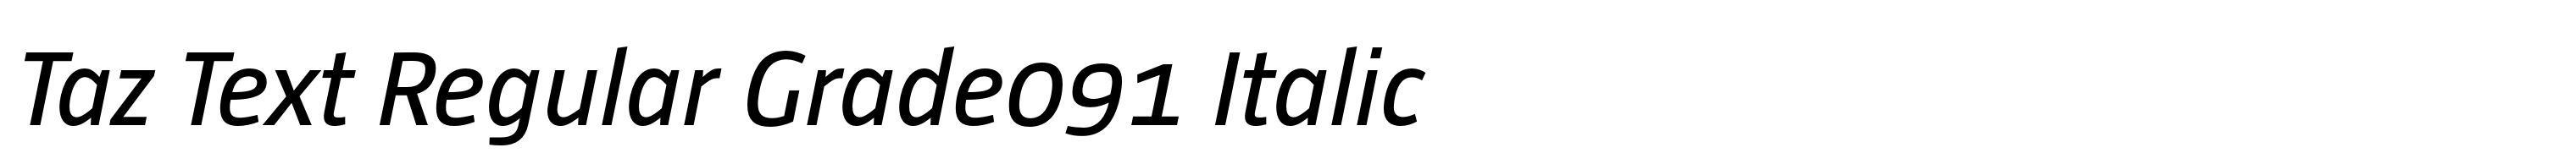 Taz Text Regular Grade091 Italic